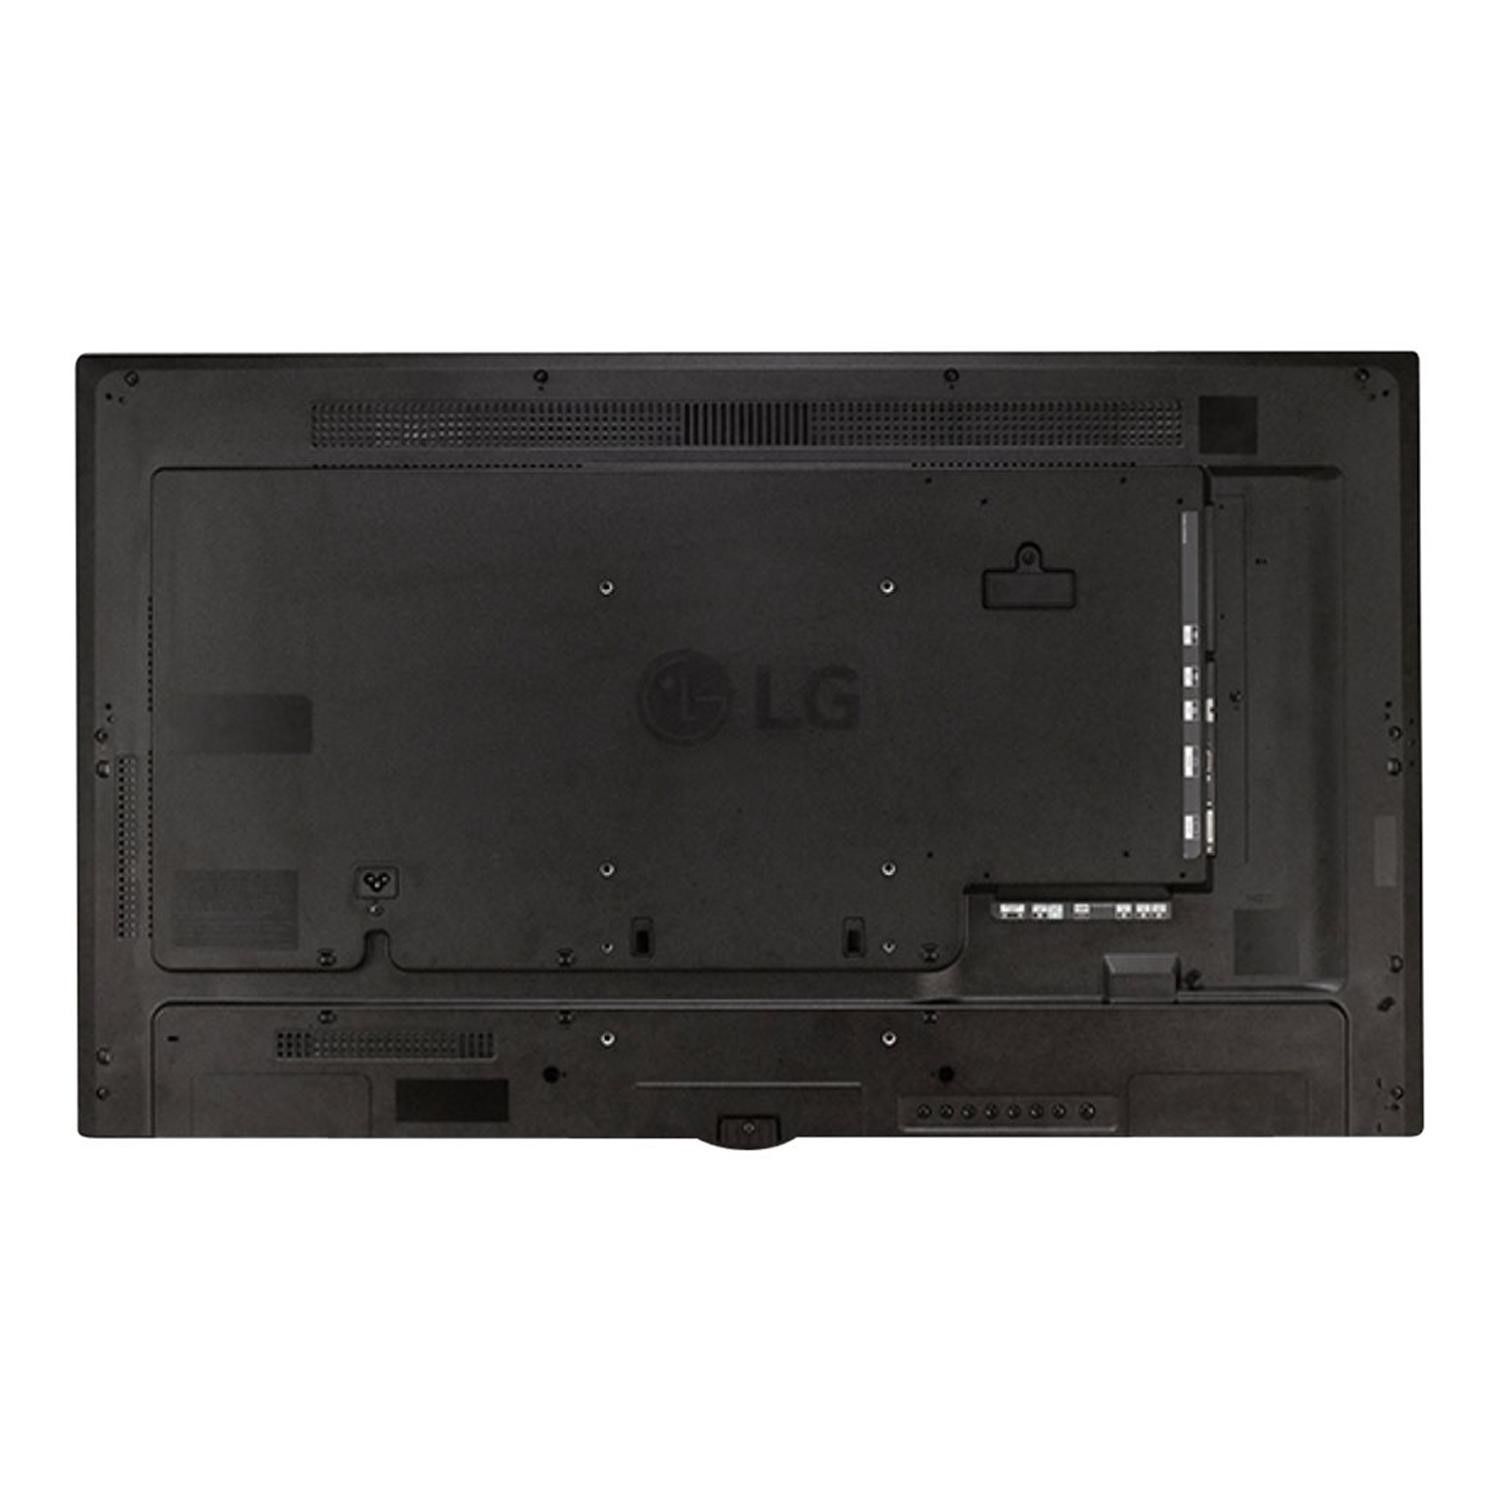 Monitor wielkoformatowy LG 55sm5c